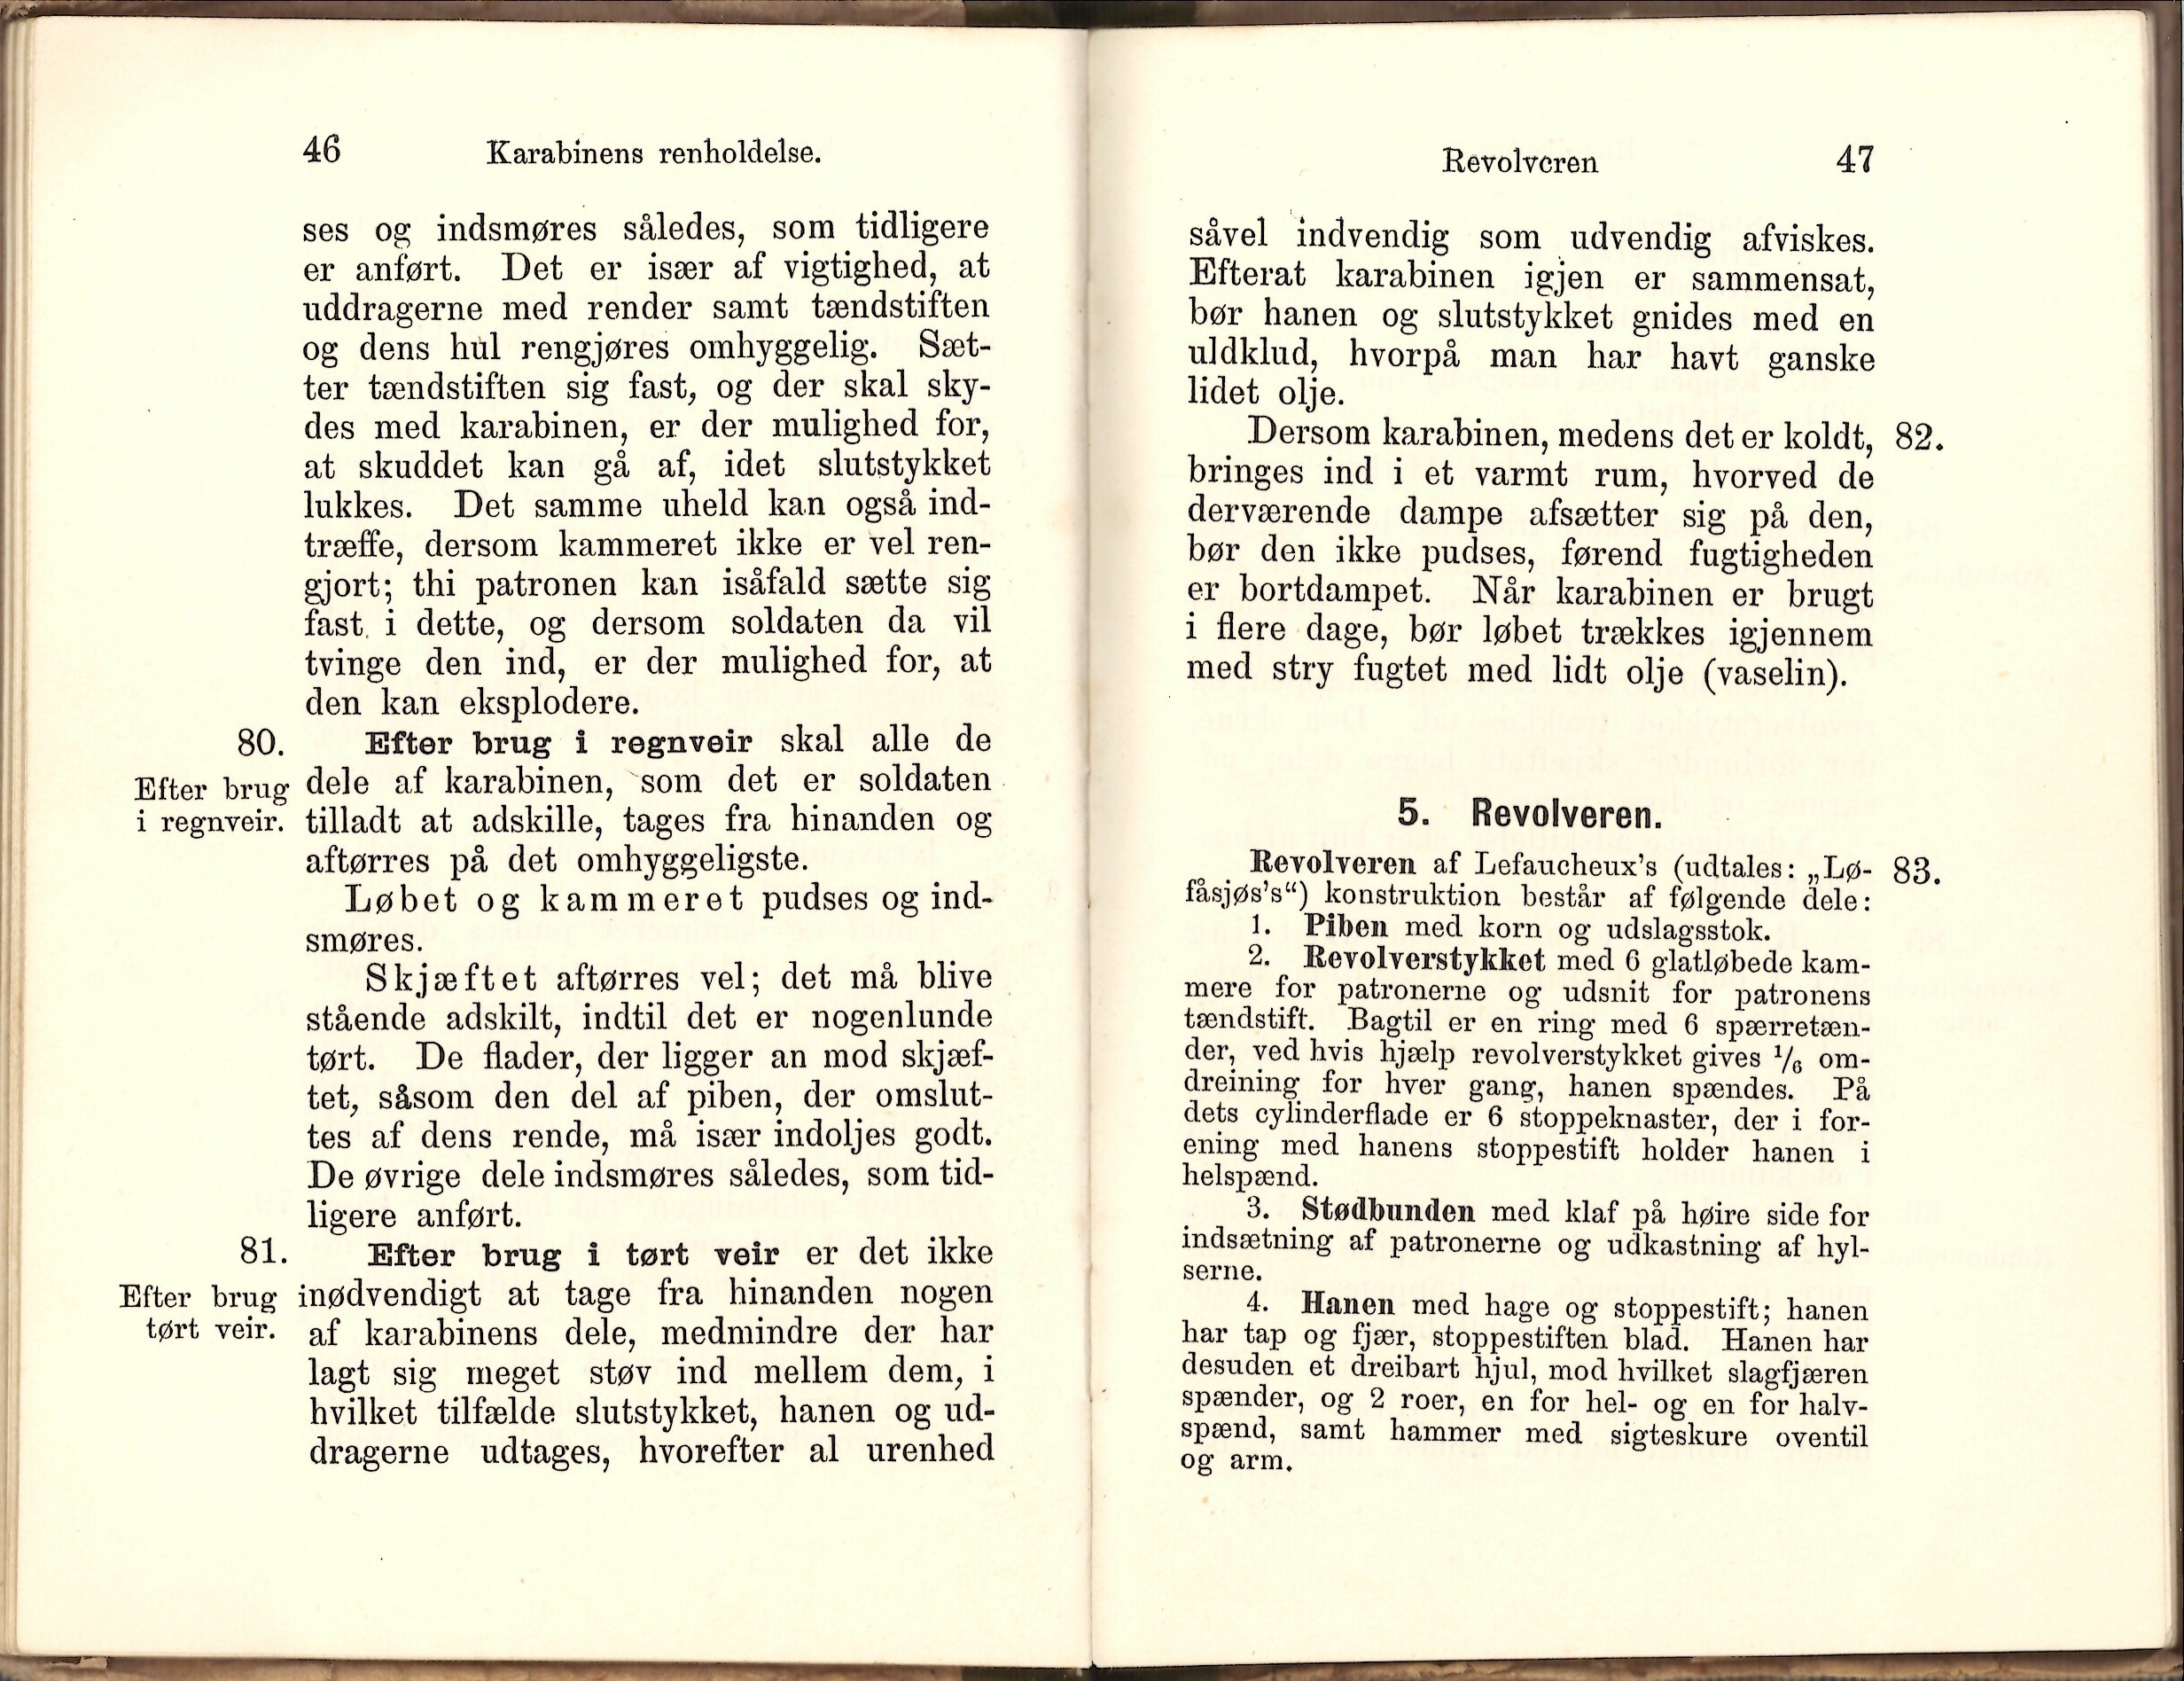 ./doc/reglement/Tren1899/Haandbok-Menig-Soldat-Trenkorps-1899-4.jpg